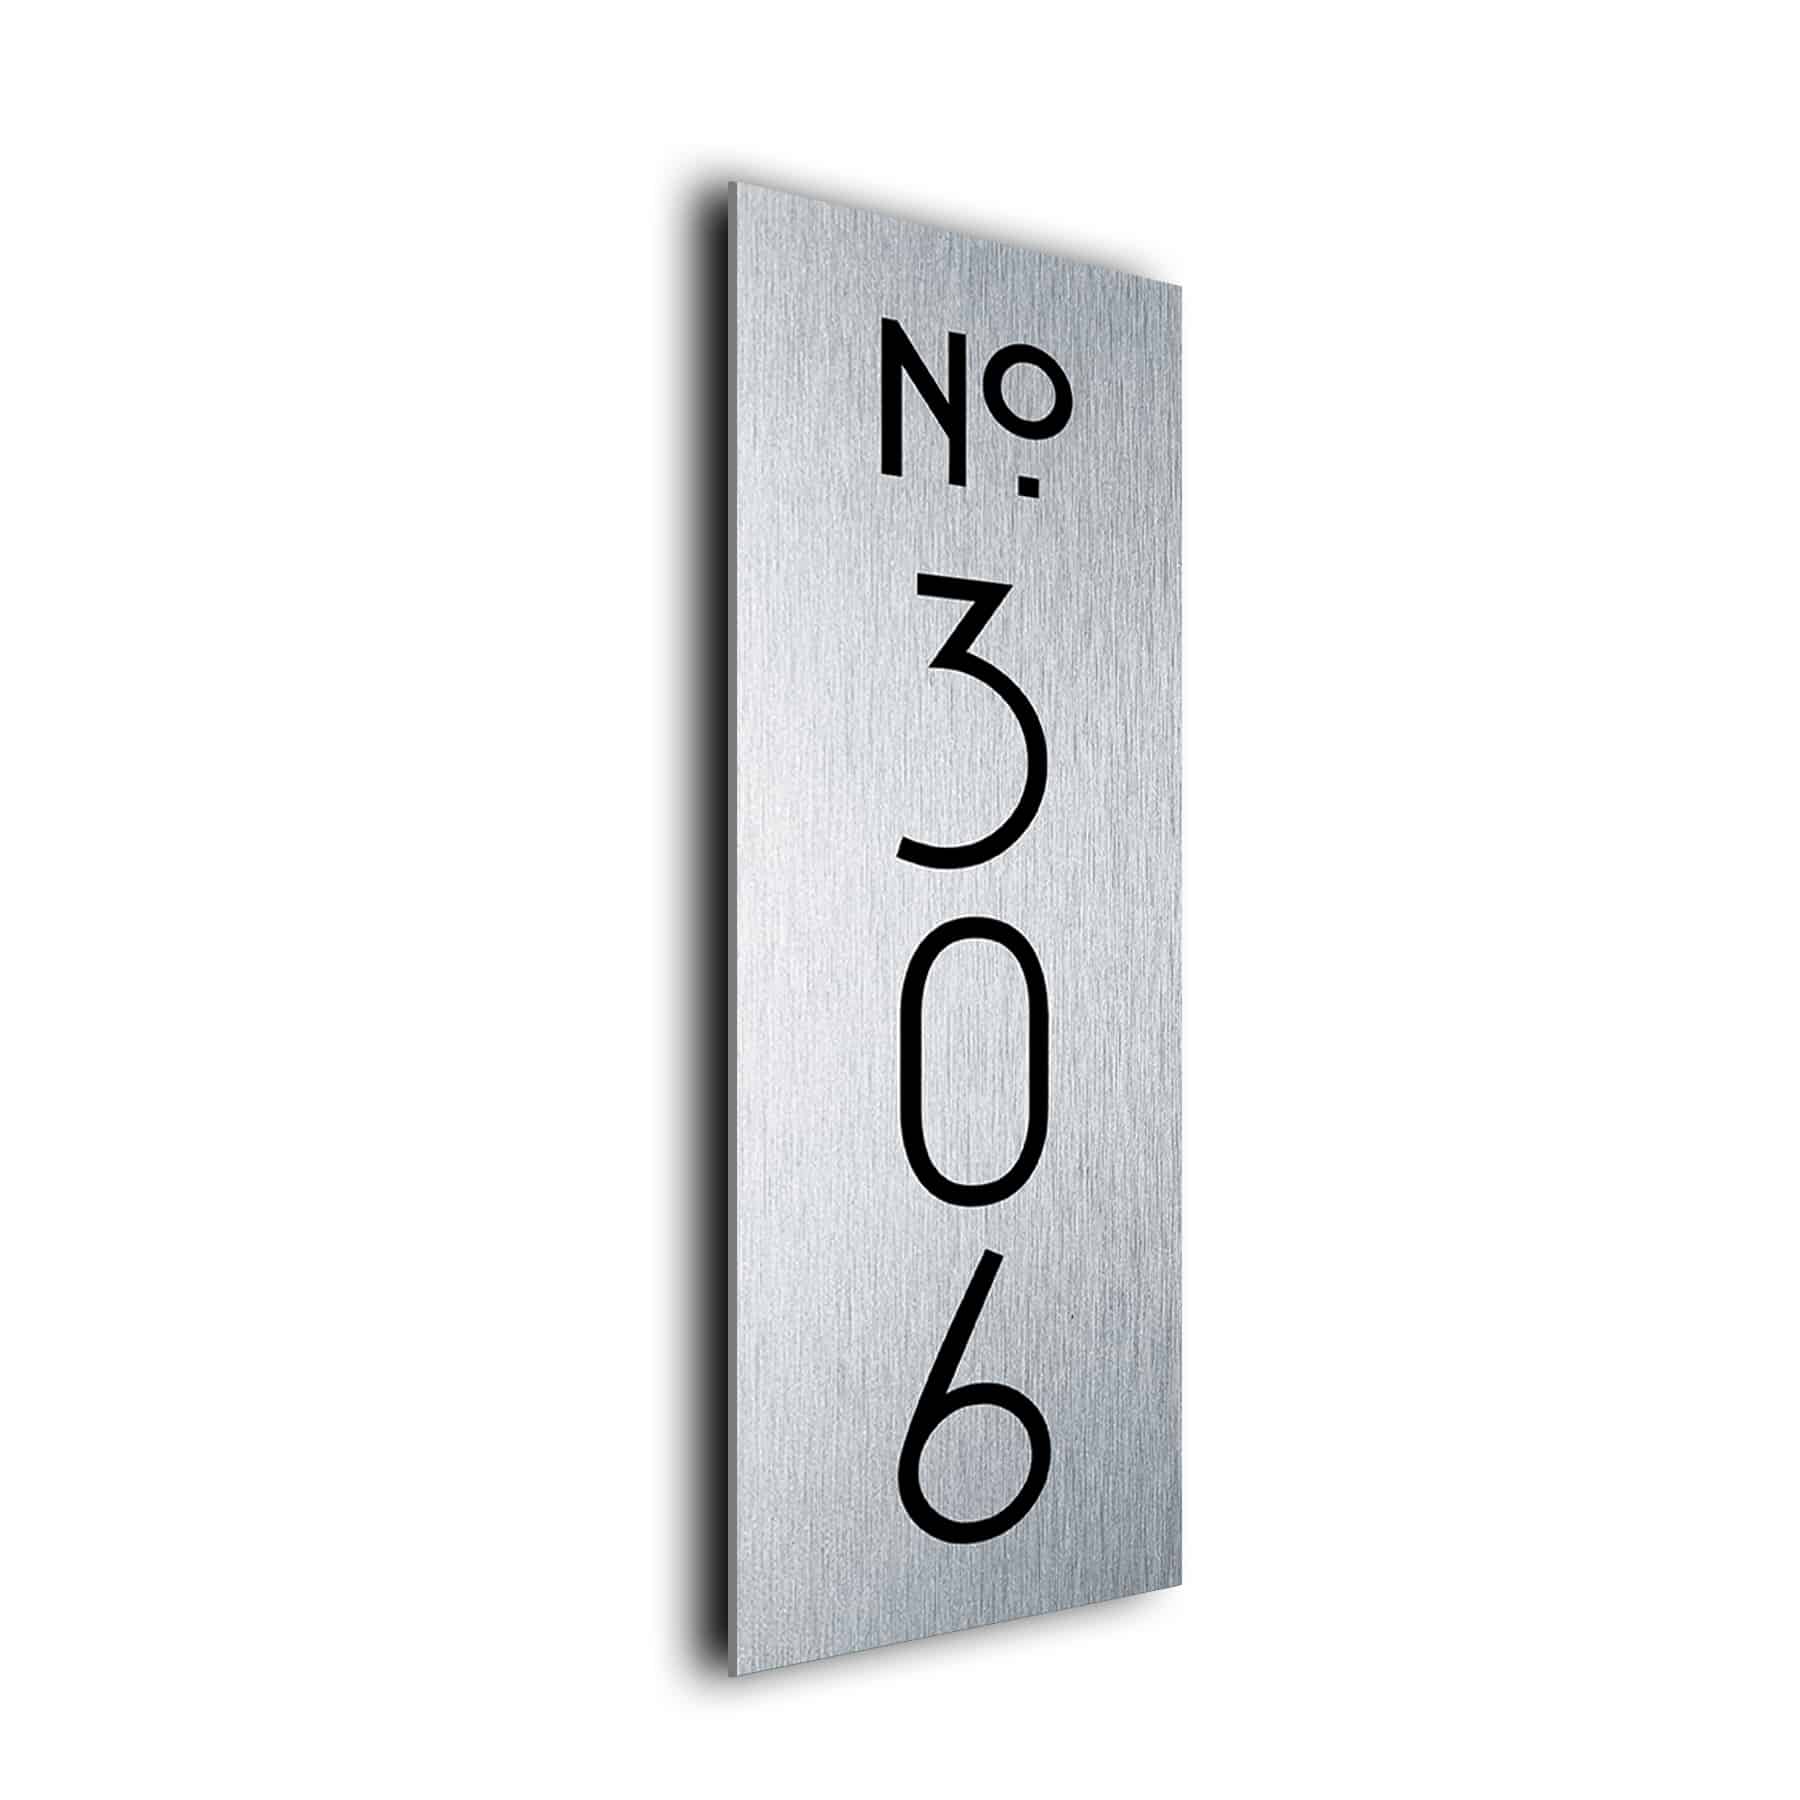 Vertical Hotel Room Number Sign